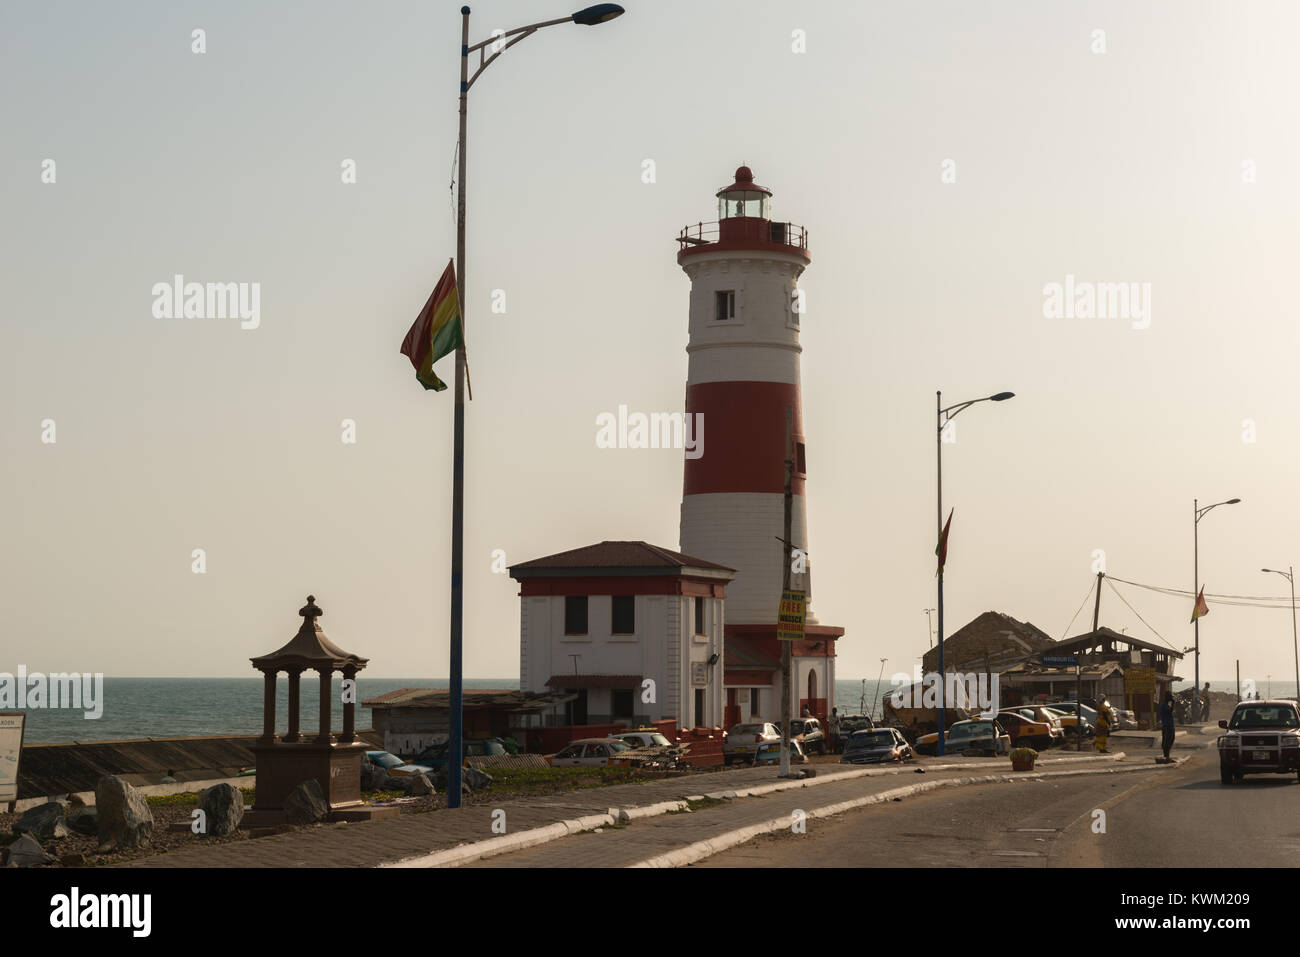 Jamestown lighthouse, Jamestown, Accra, Ghana, Africa Stock Photo